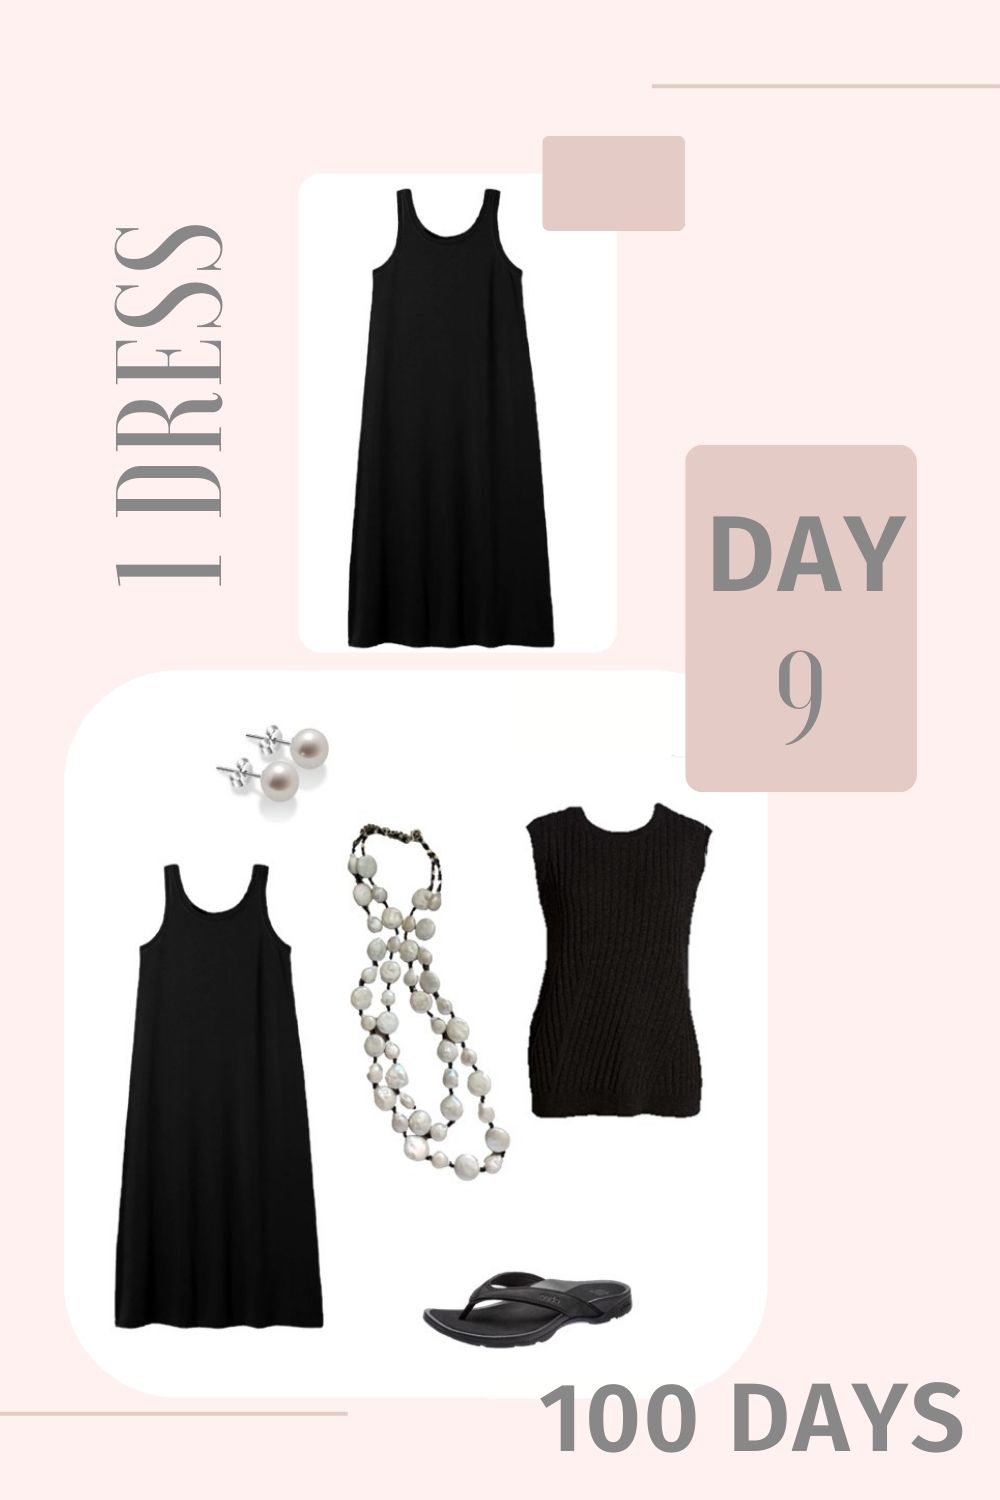 1 Dress 100 Days - Day 9